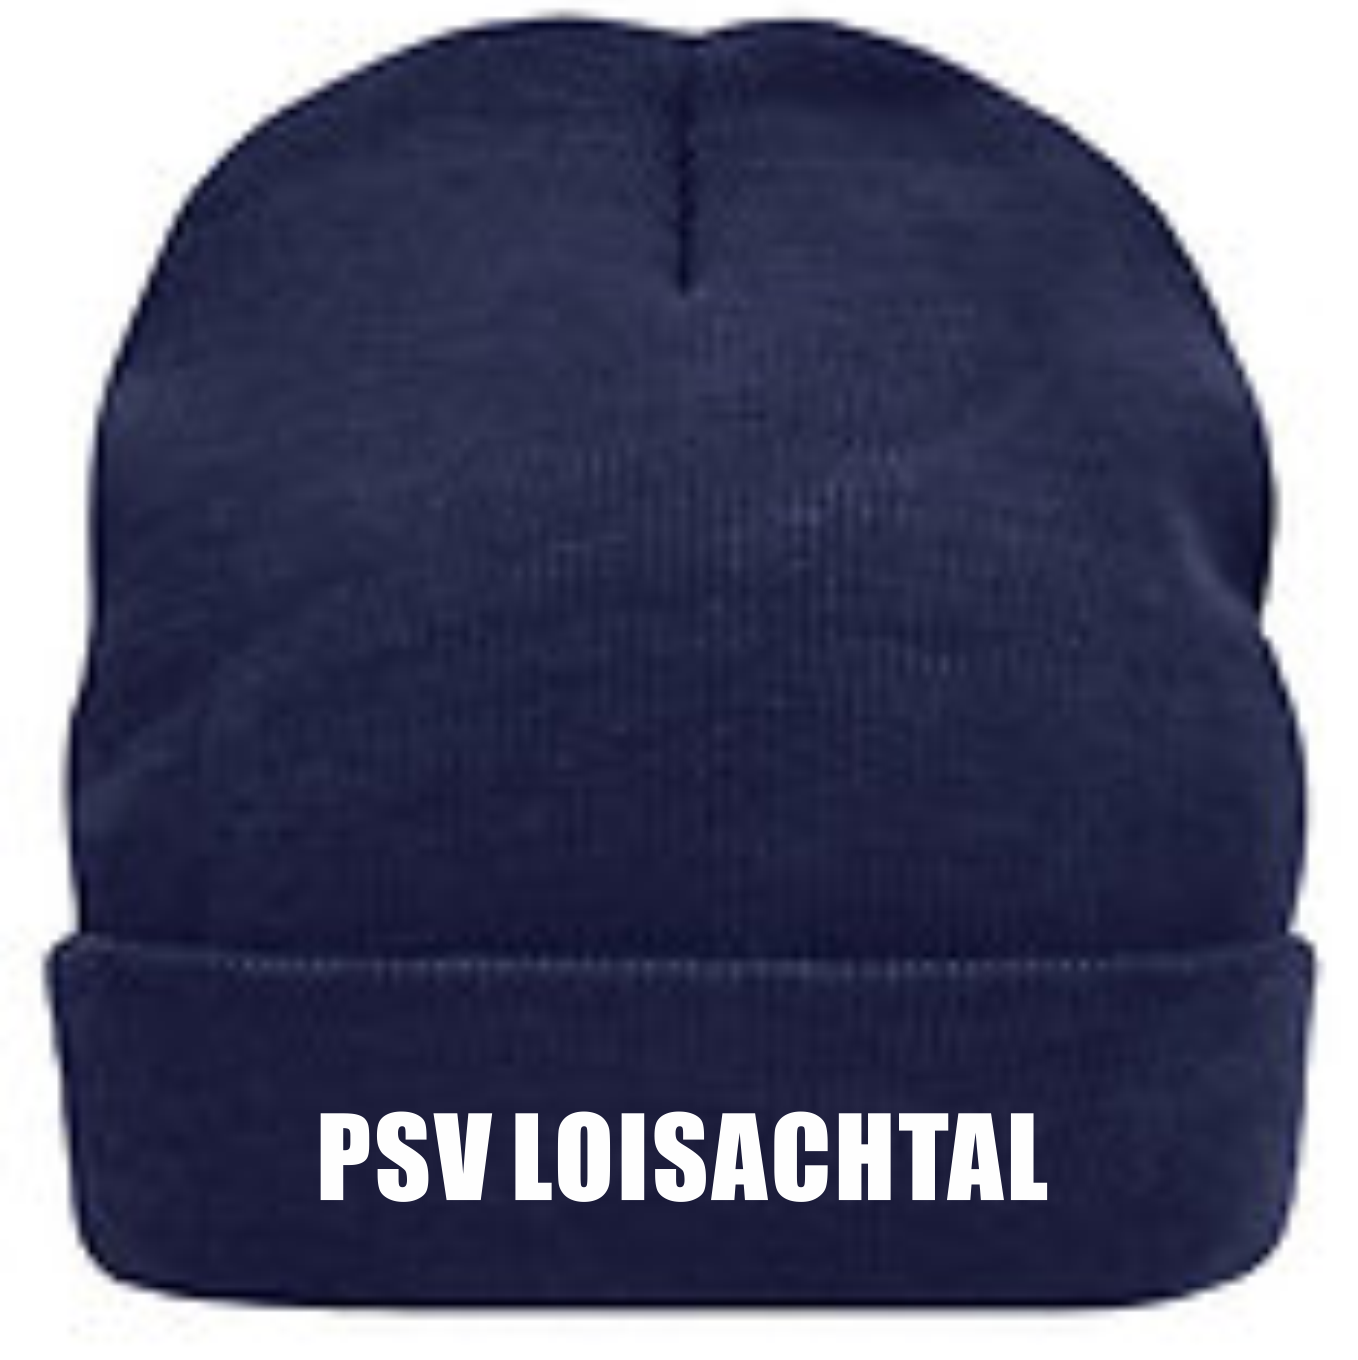 PSV_ Strickmütze navy